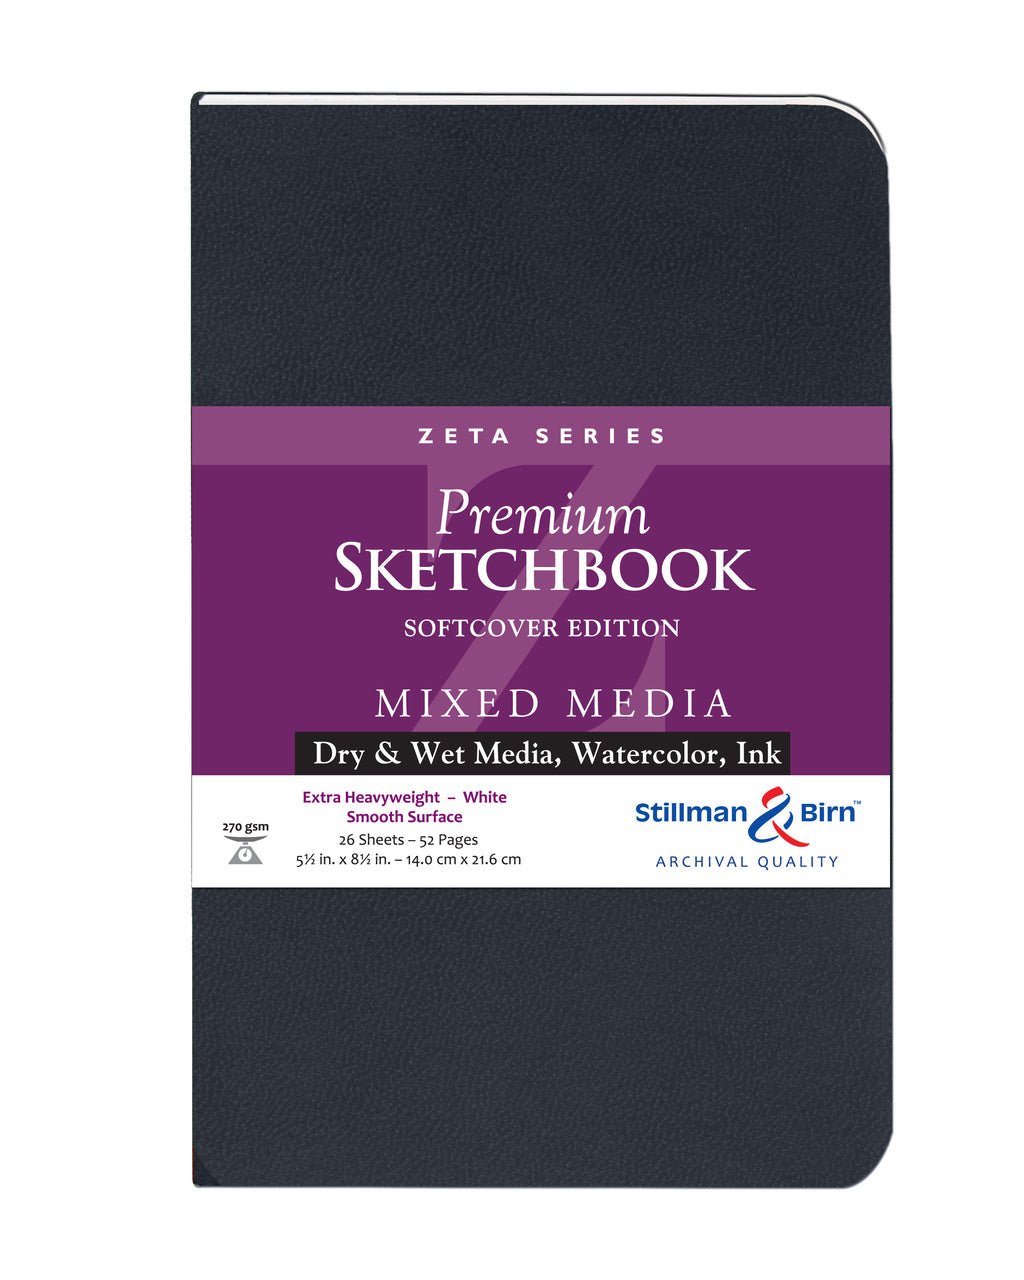 Sketchbook System, Stillman & Birn